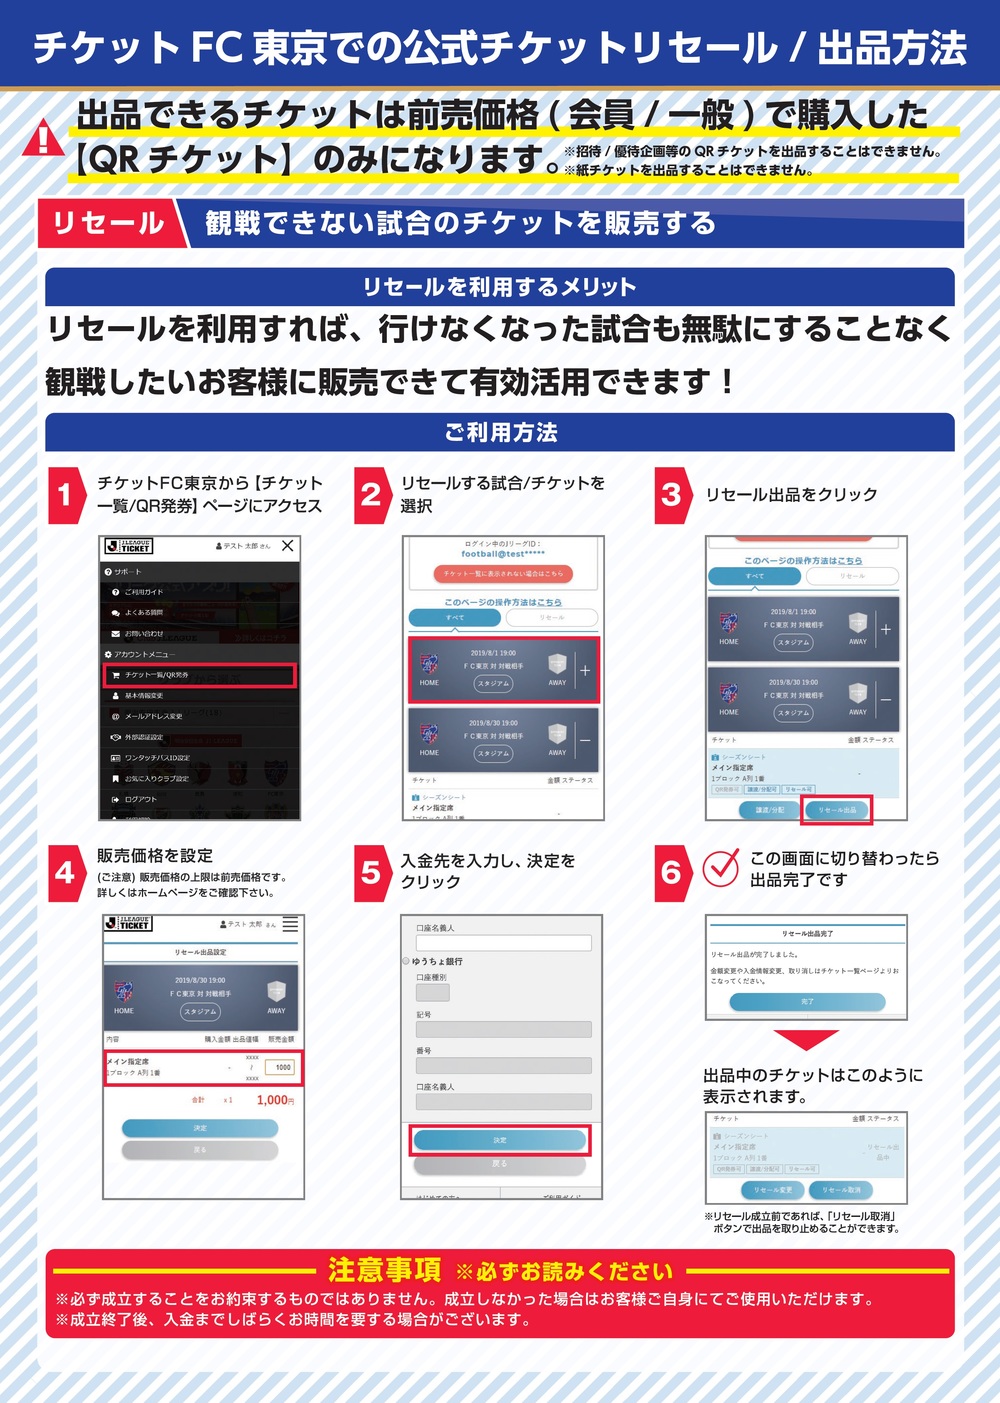 チケットfc東京 でのリセール出品および購入方法について ニュース Fc東京オフィシャルホームページ